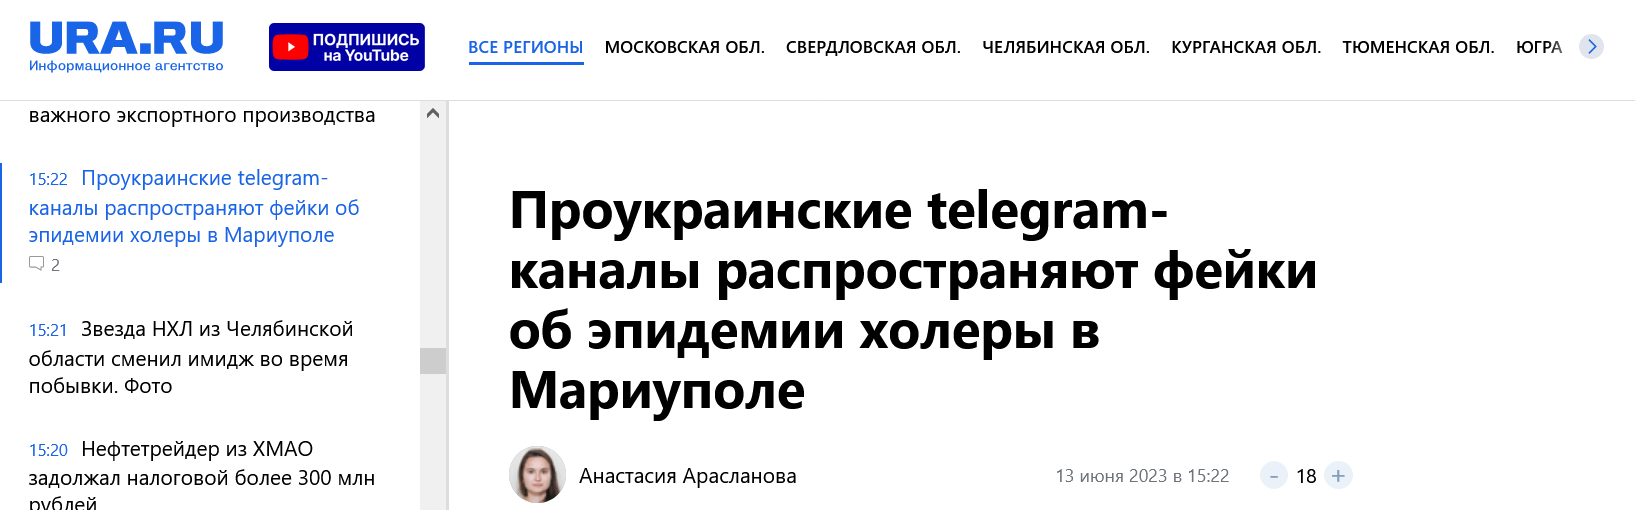 Screenshot 2023 06 13 At 16 18 23 Proukrainskie Telegram Kanaly Rasprostranyayut Fejki Ob Epidemii Holery V Mariupole